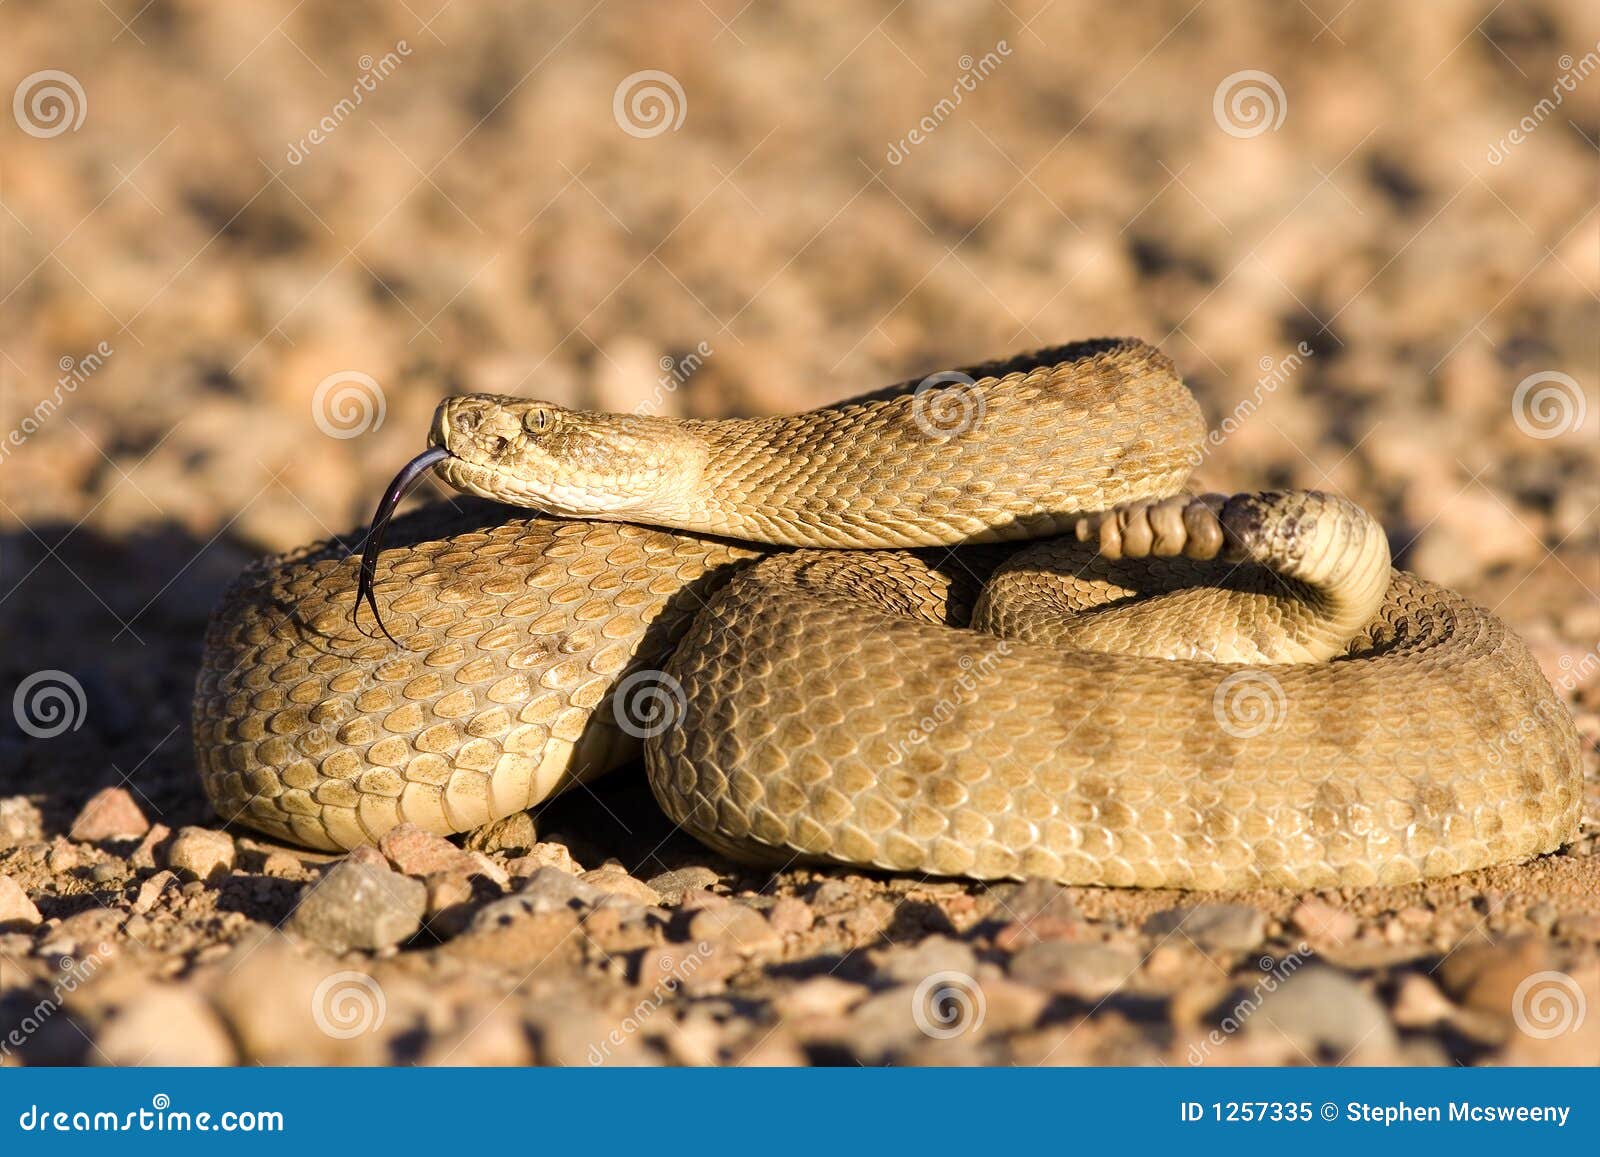 coiled up rattlesnake